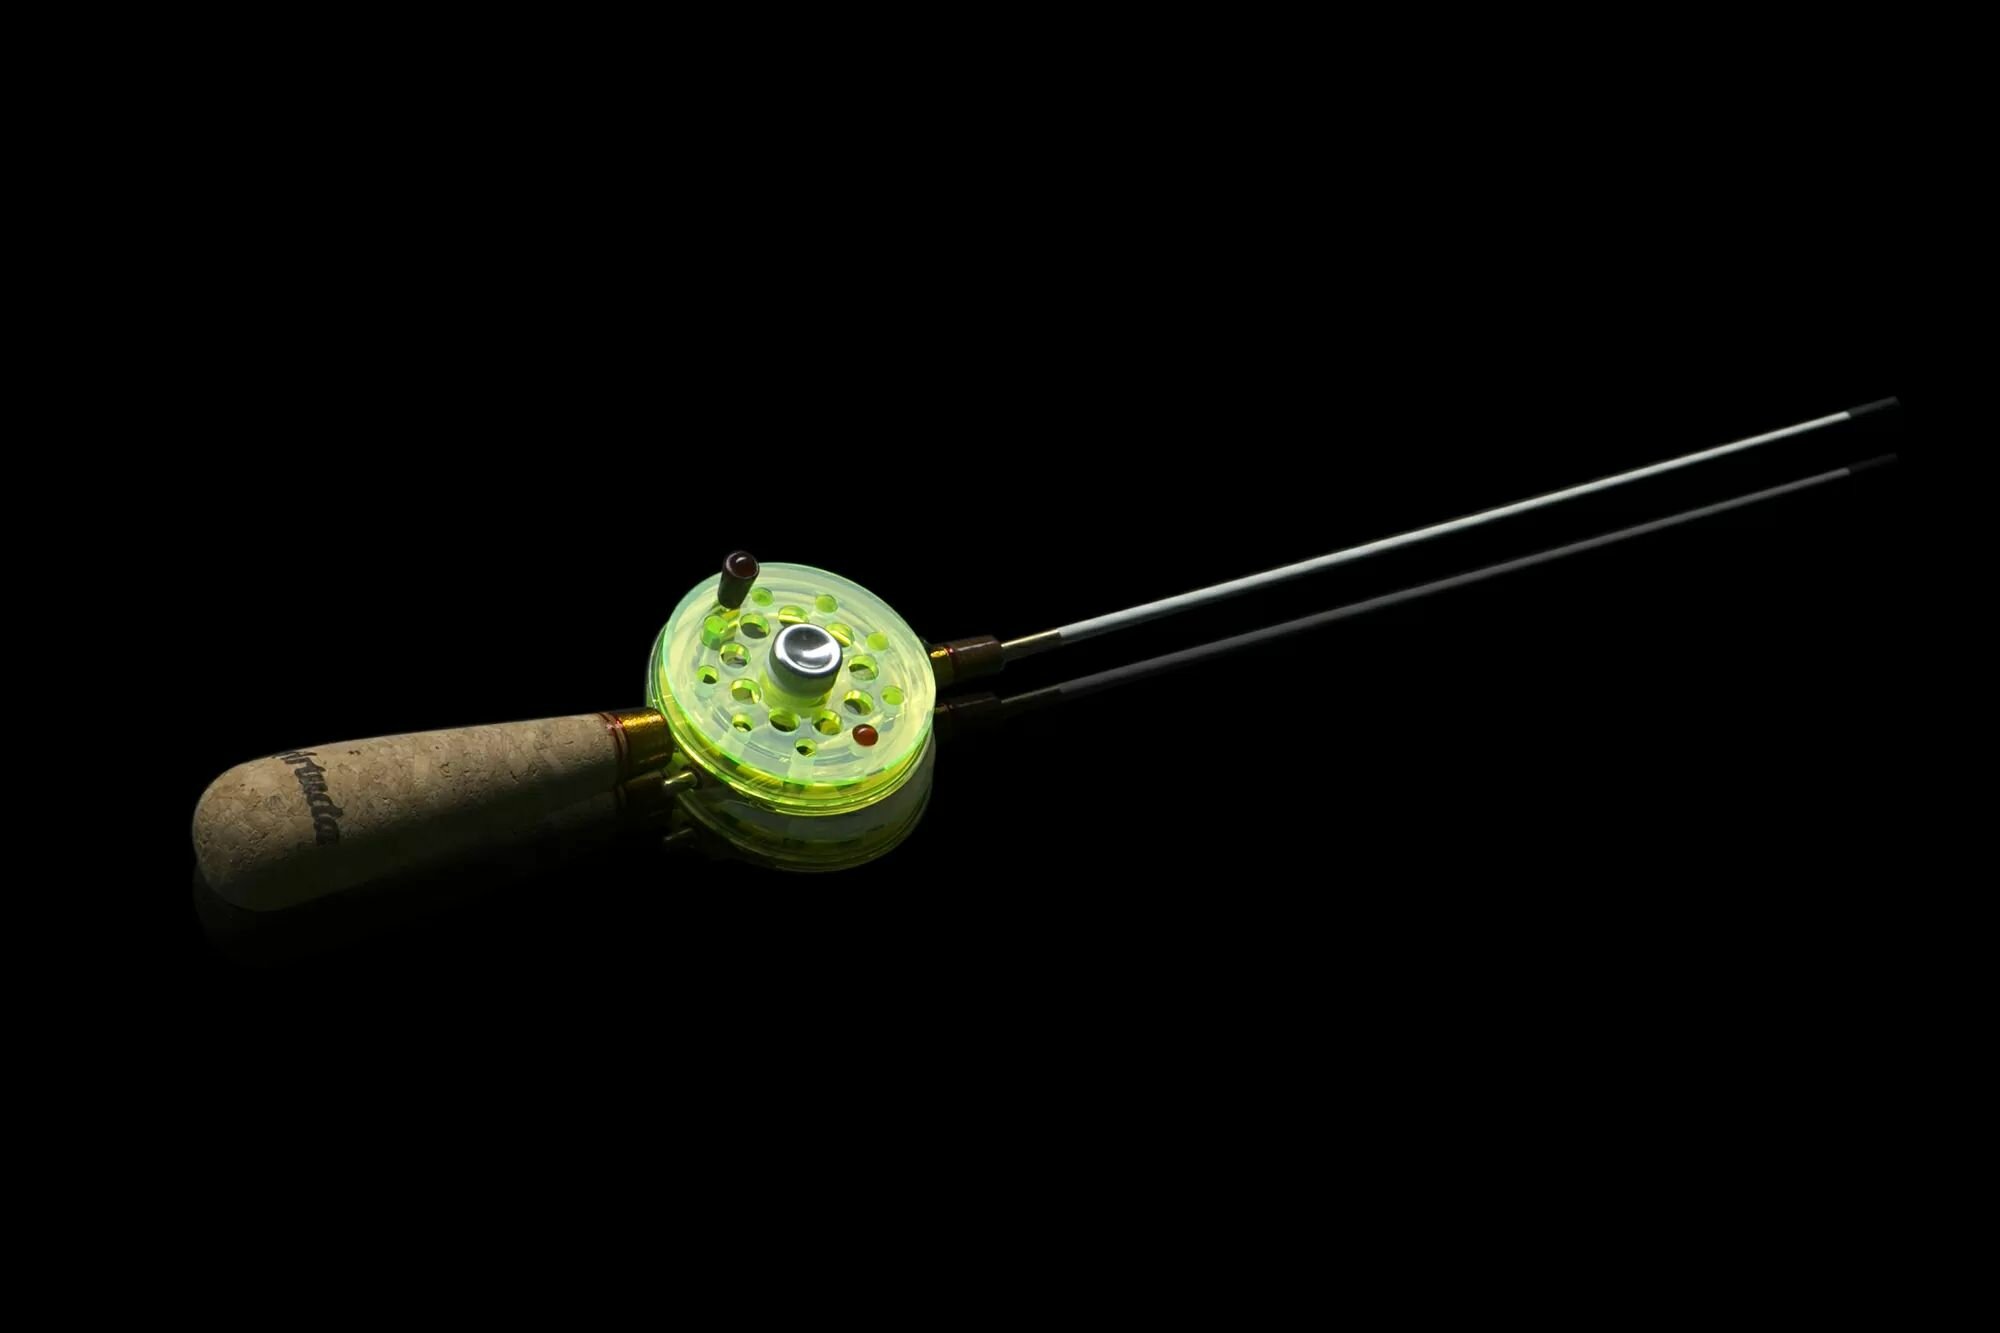 Зимняя удочка Артуда Классика L желтая двумя хлыстами для рыбалки на блесну, мормышку, силиконовые приманки